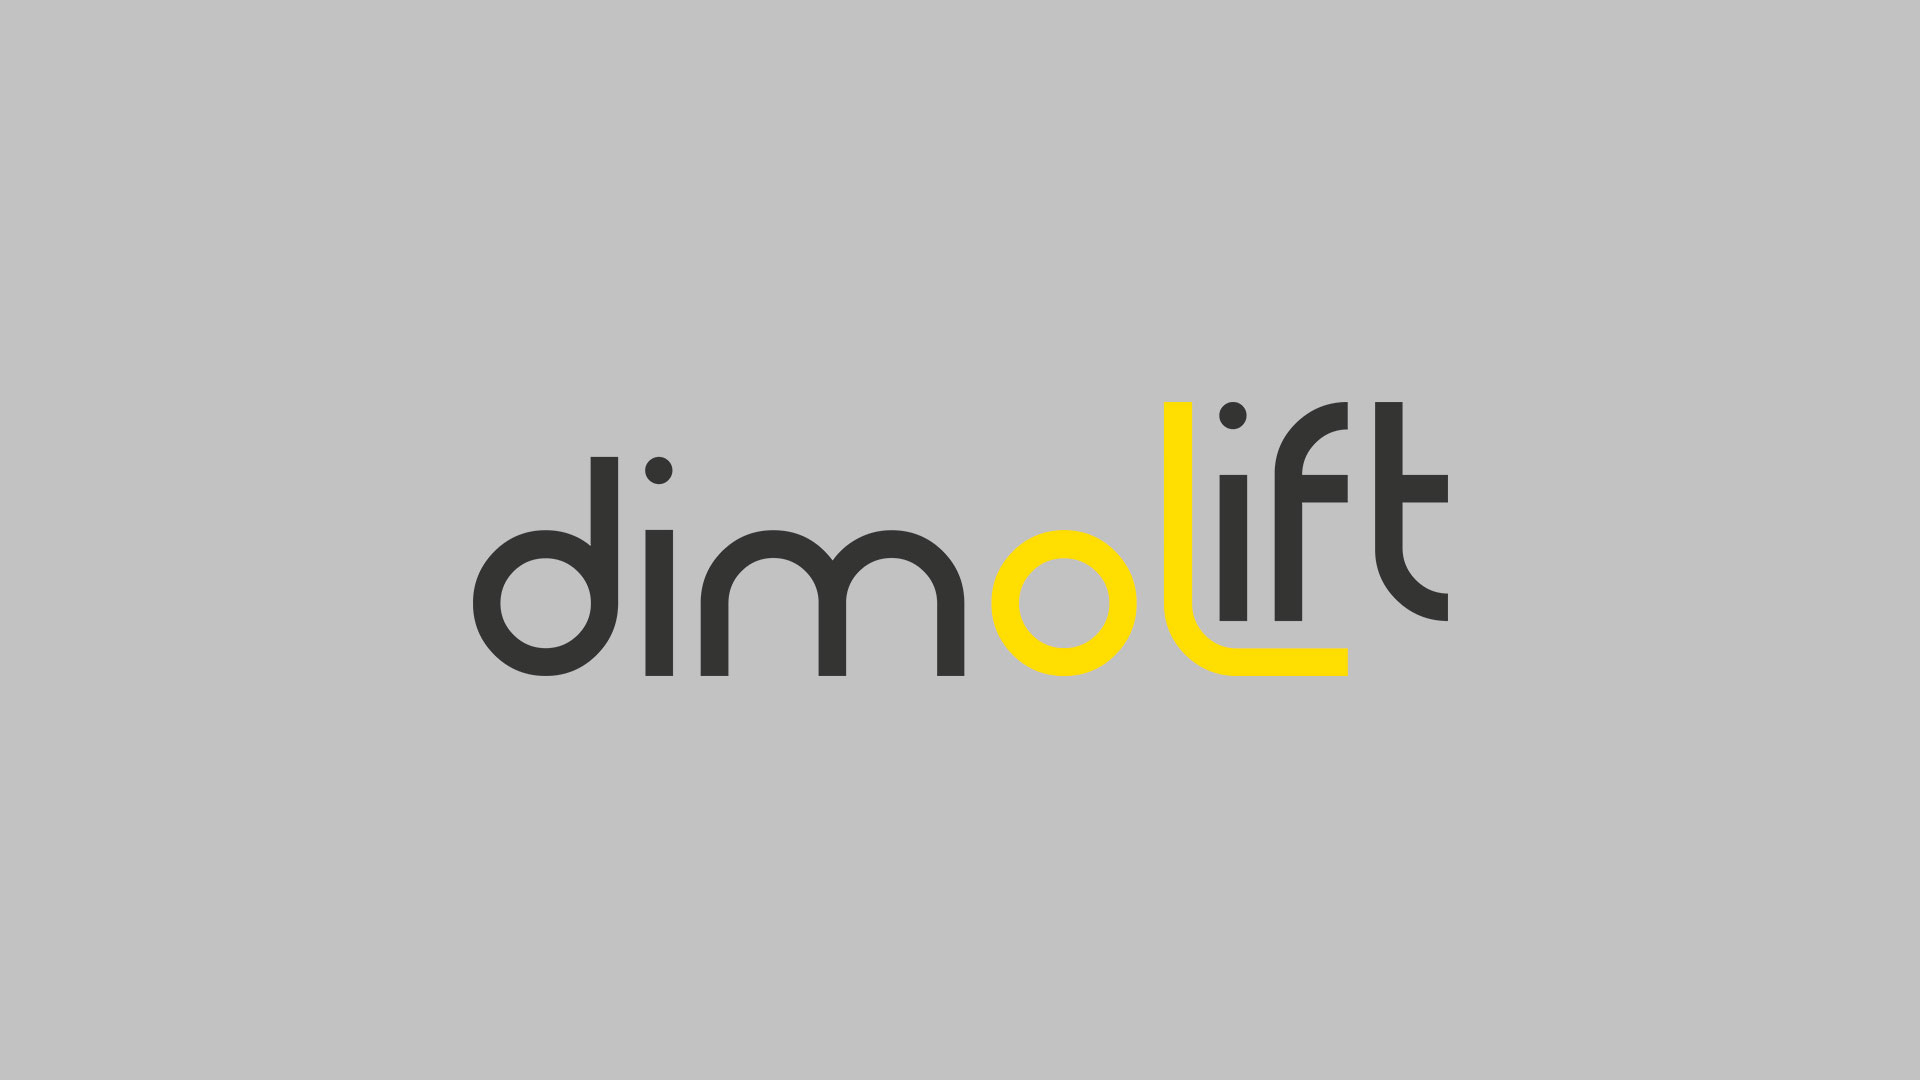 Dimolift